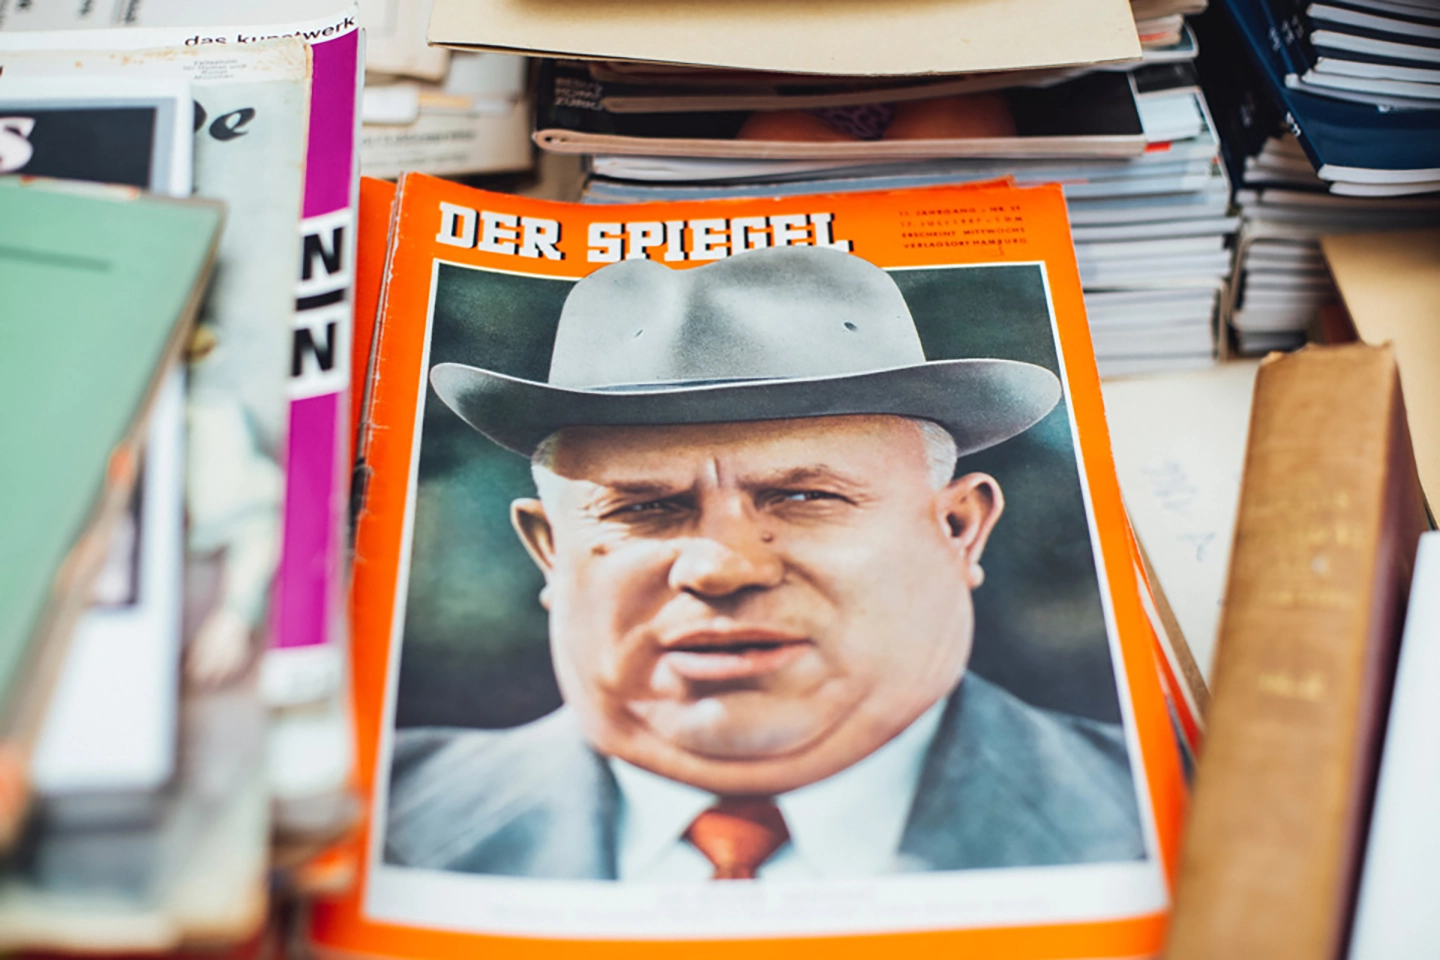 Alte Ausgabe des Magazins "DER SPIEGEL" mit einem Portrait von Benito Mussolini auf dem Cover, umgeben von anderen Büchern.